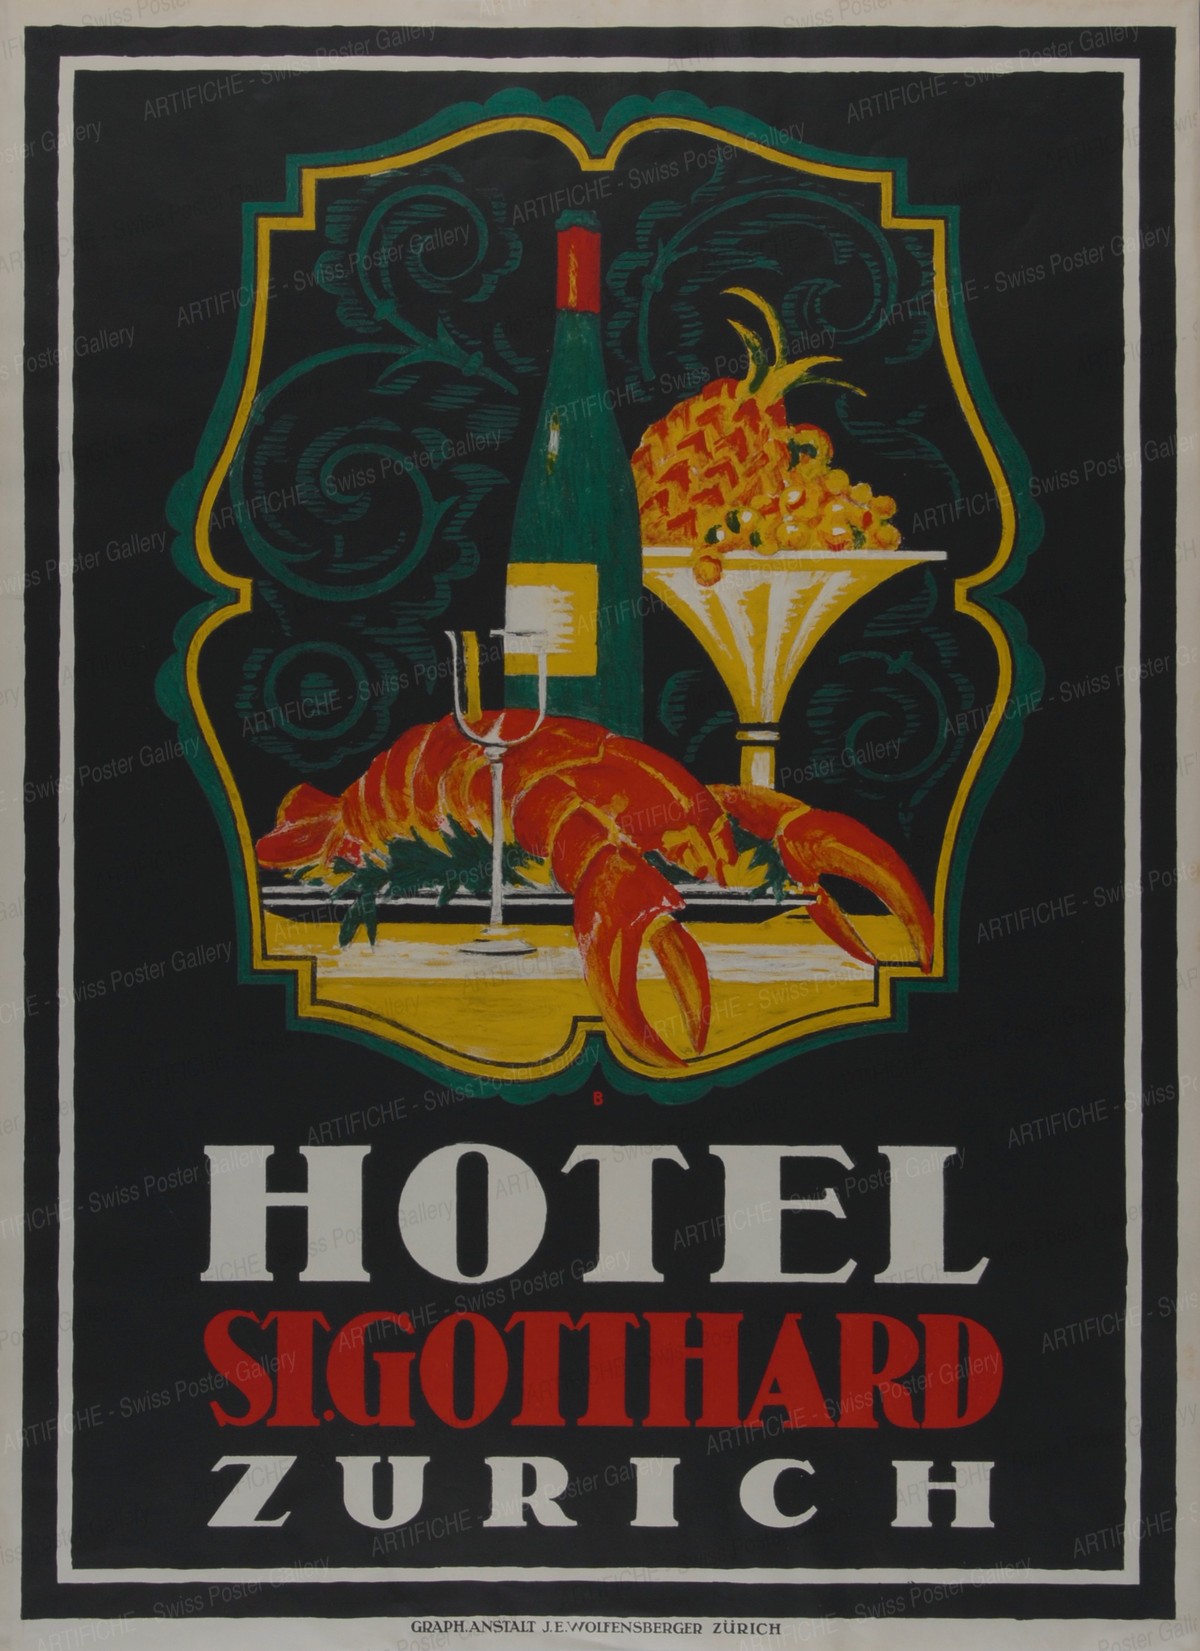 St. Gotthard Hotel Zurich, Otto Baumberger